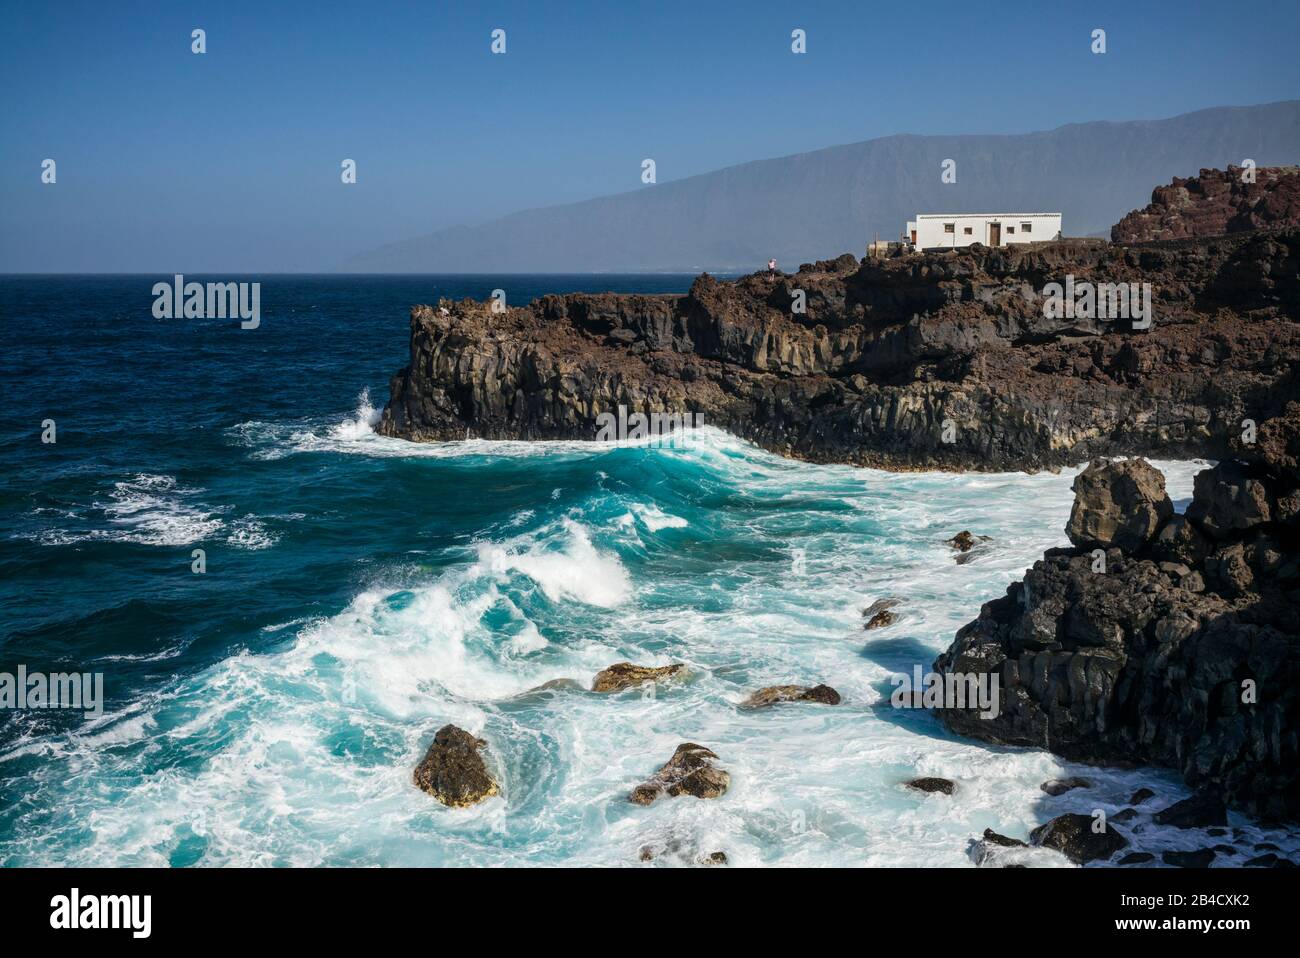 Spain, Canary Islands, El Hierro Island, Pozo de la Salud, coastal view Stock Photo